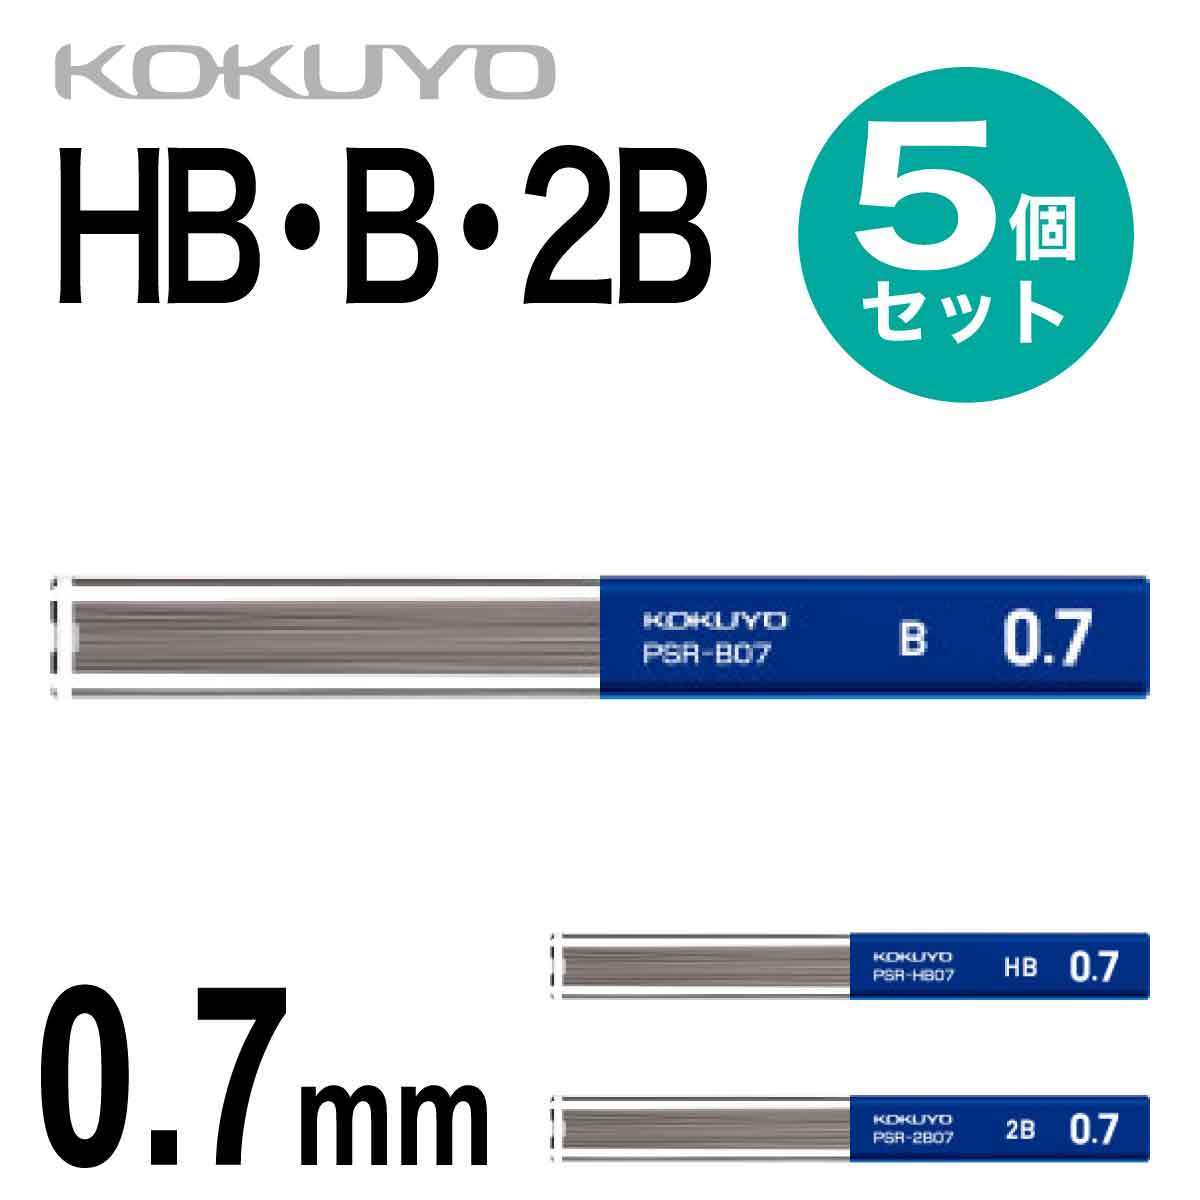 コクヨ 5個セット シャープ 替え芯 0.7 シャーペン シャープペンシル 替芯 HB B 2B PSR-HB07 PSR-B07 PSR-2B07